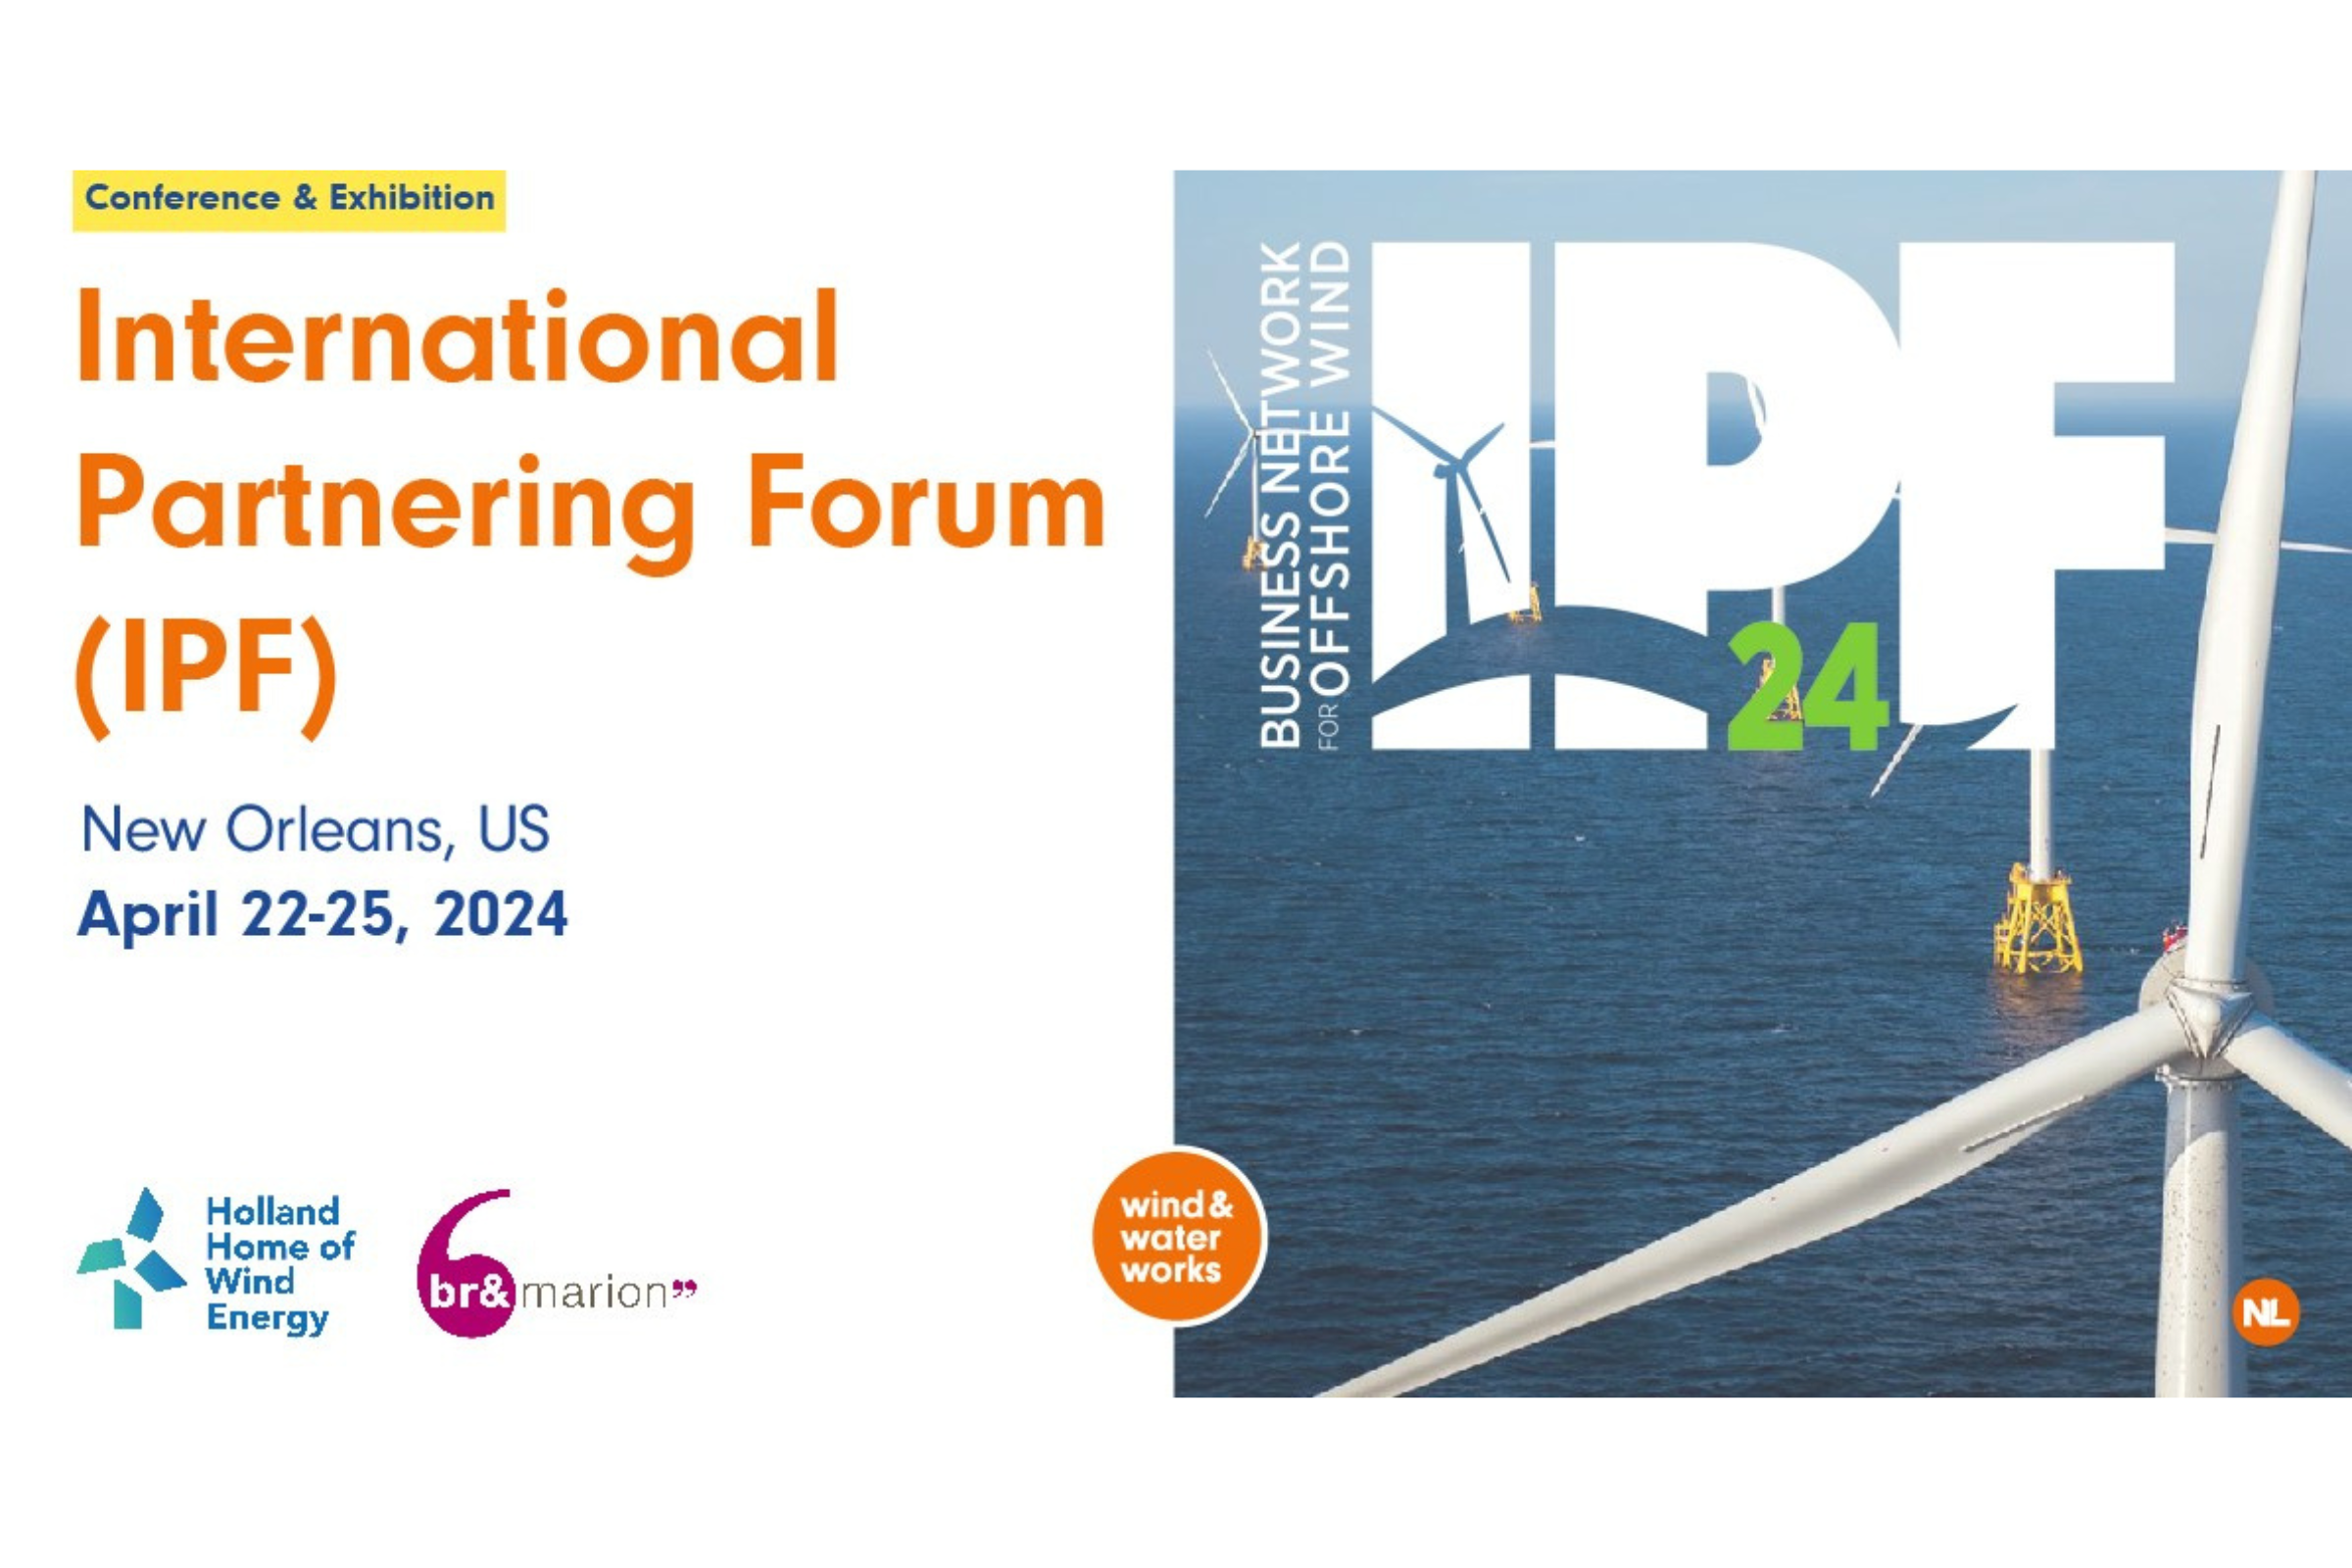 Handelsmissie offshore wind naar International Partnering Forum 2024 in VS